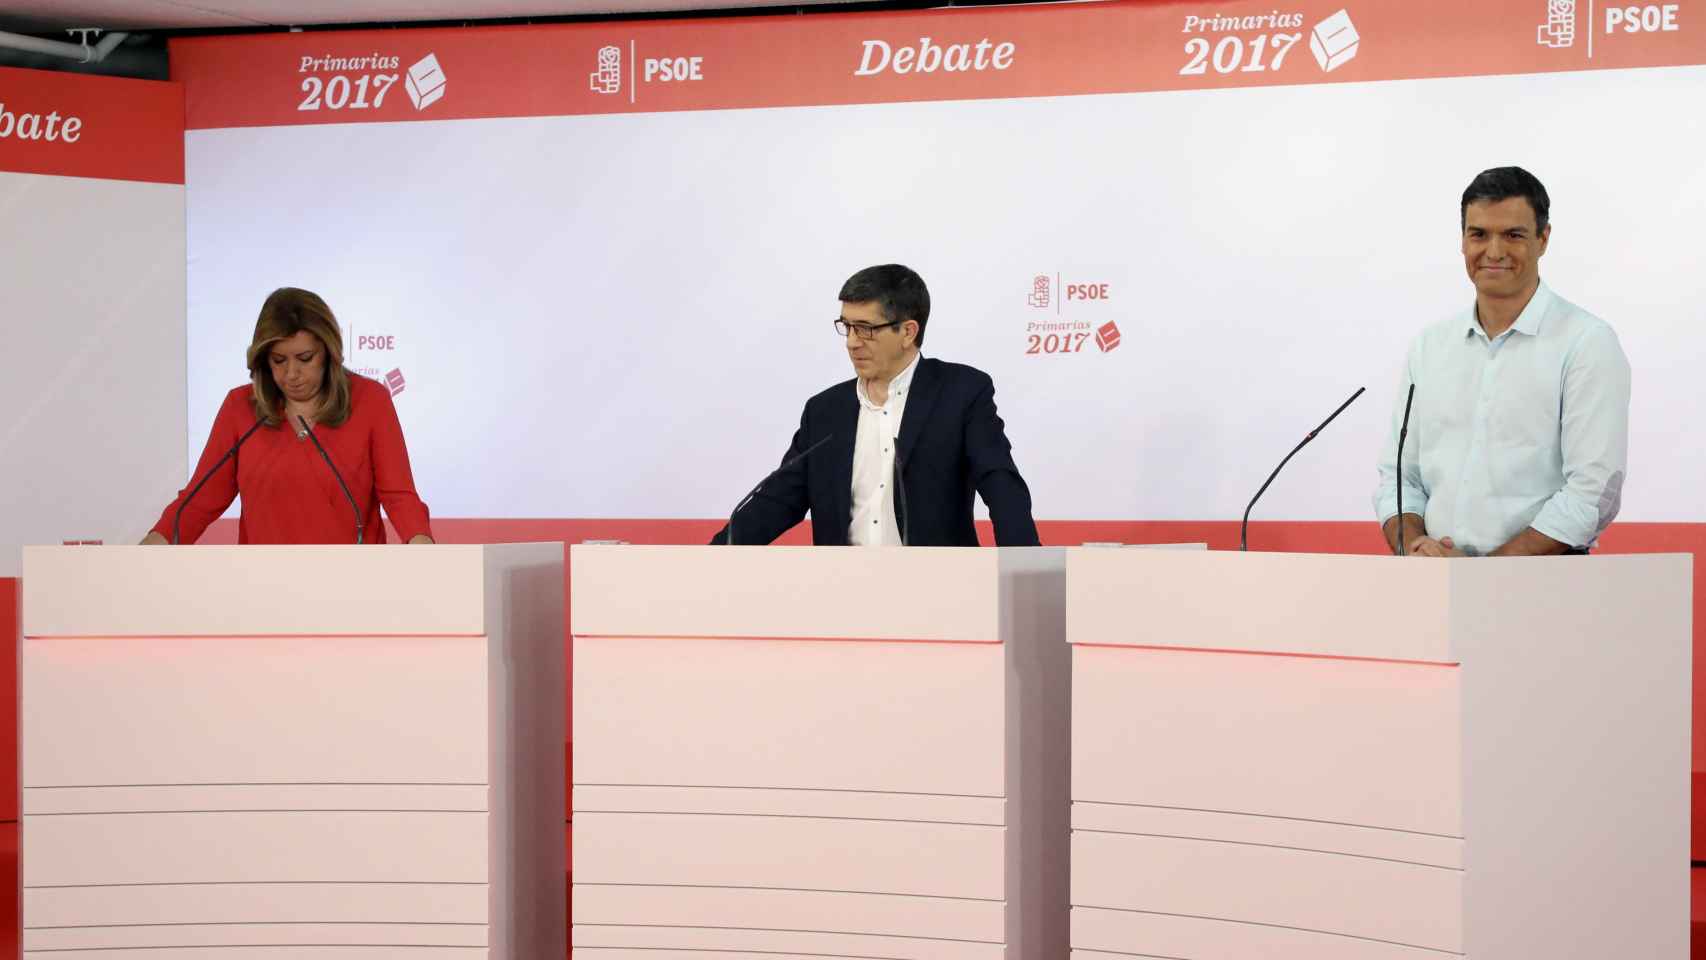 Díaz, López y Sánchez en un momento del debate.